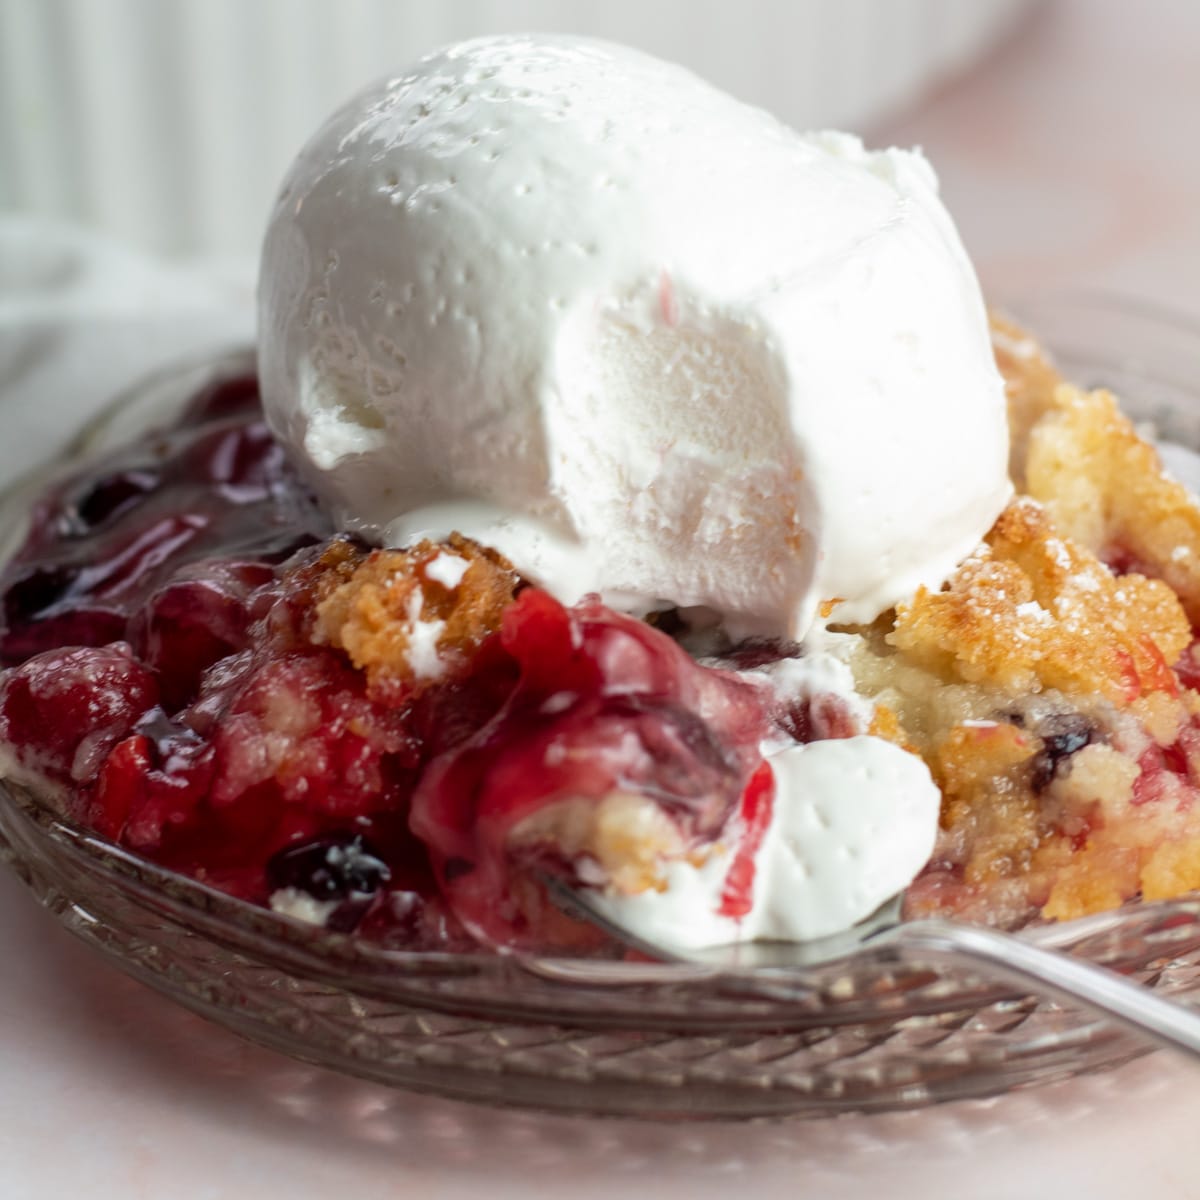 O melhor bolo de cereja de mirtilo já servido em prato de vidro com sorvete.